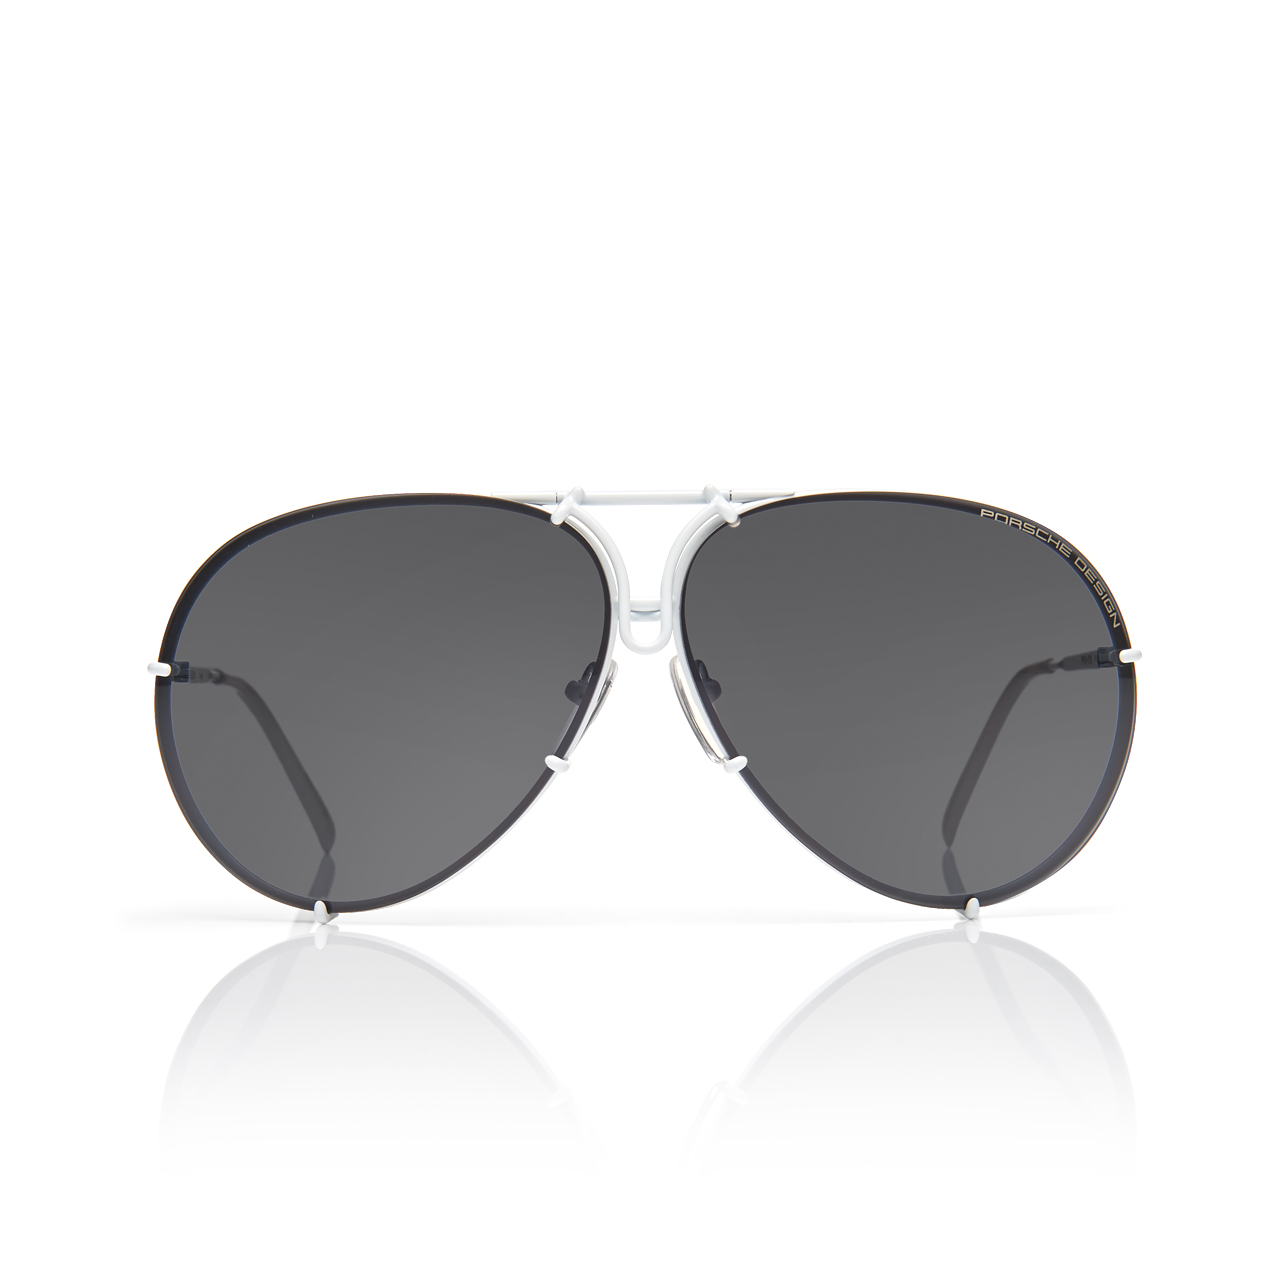 Sunglasses P´8478 - Stylish Aviator Sunglasses for Men | Porsche 